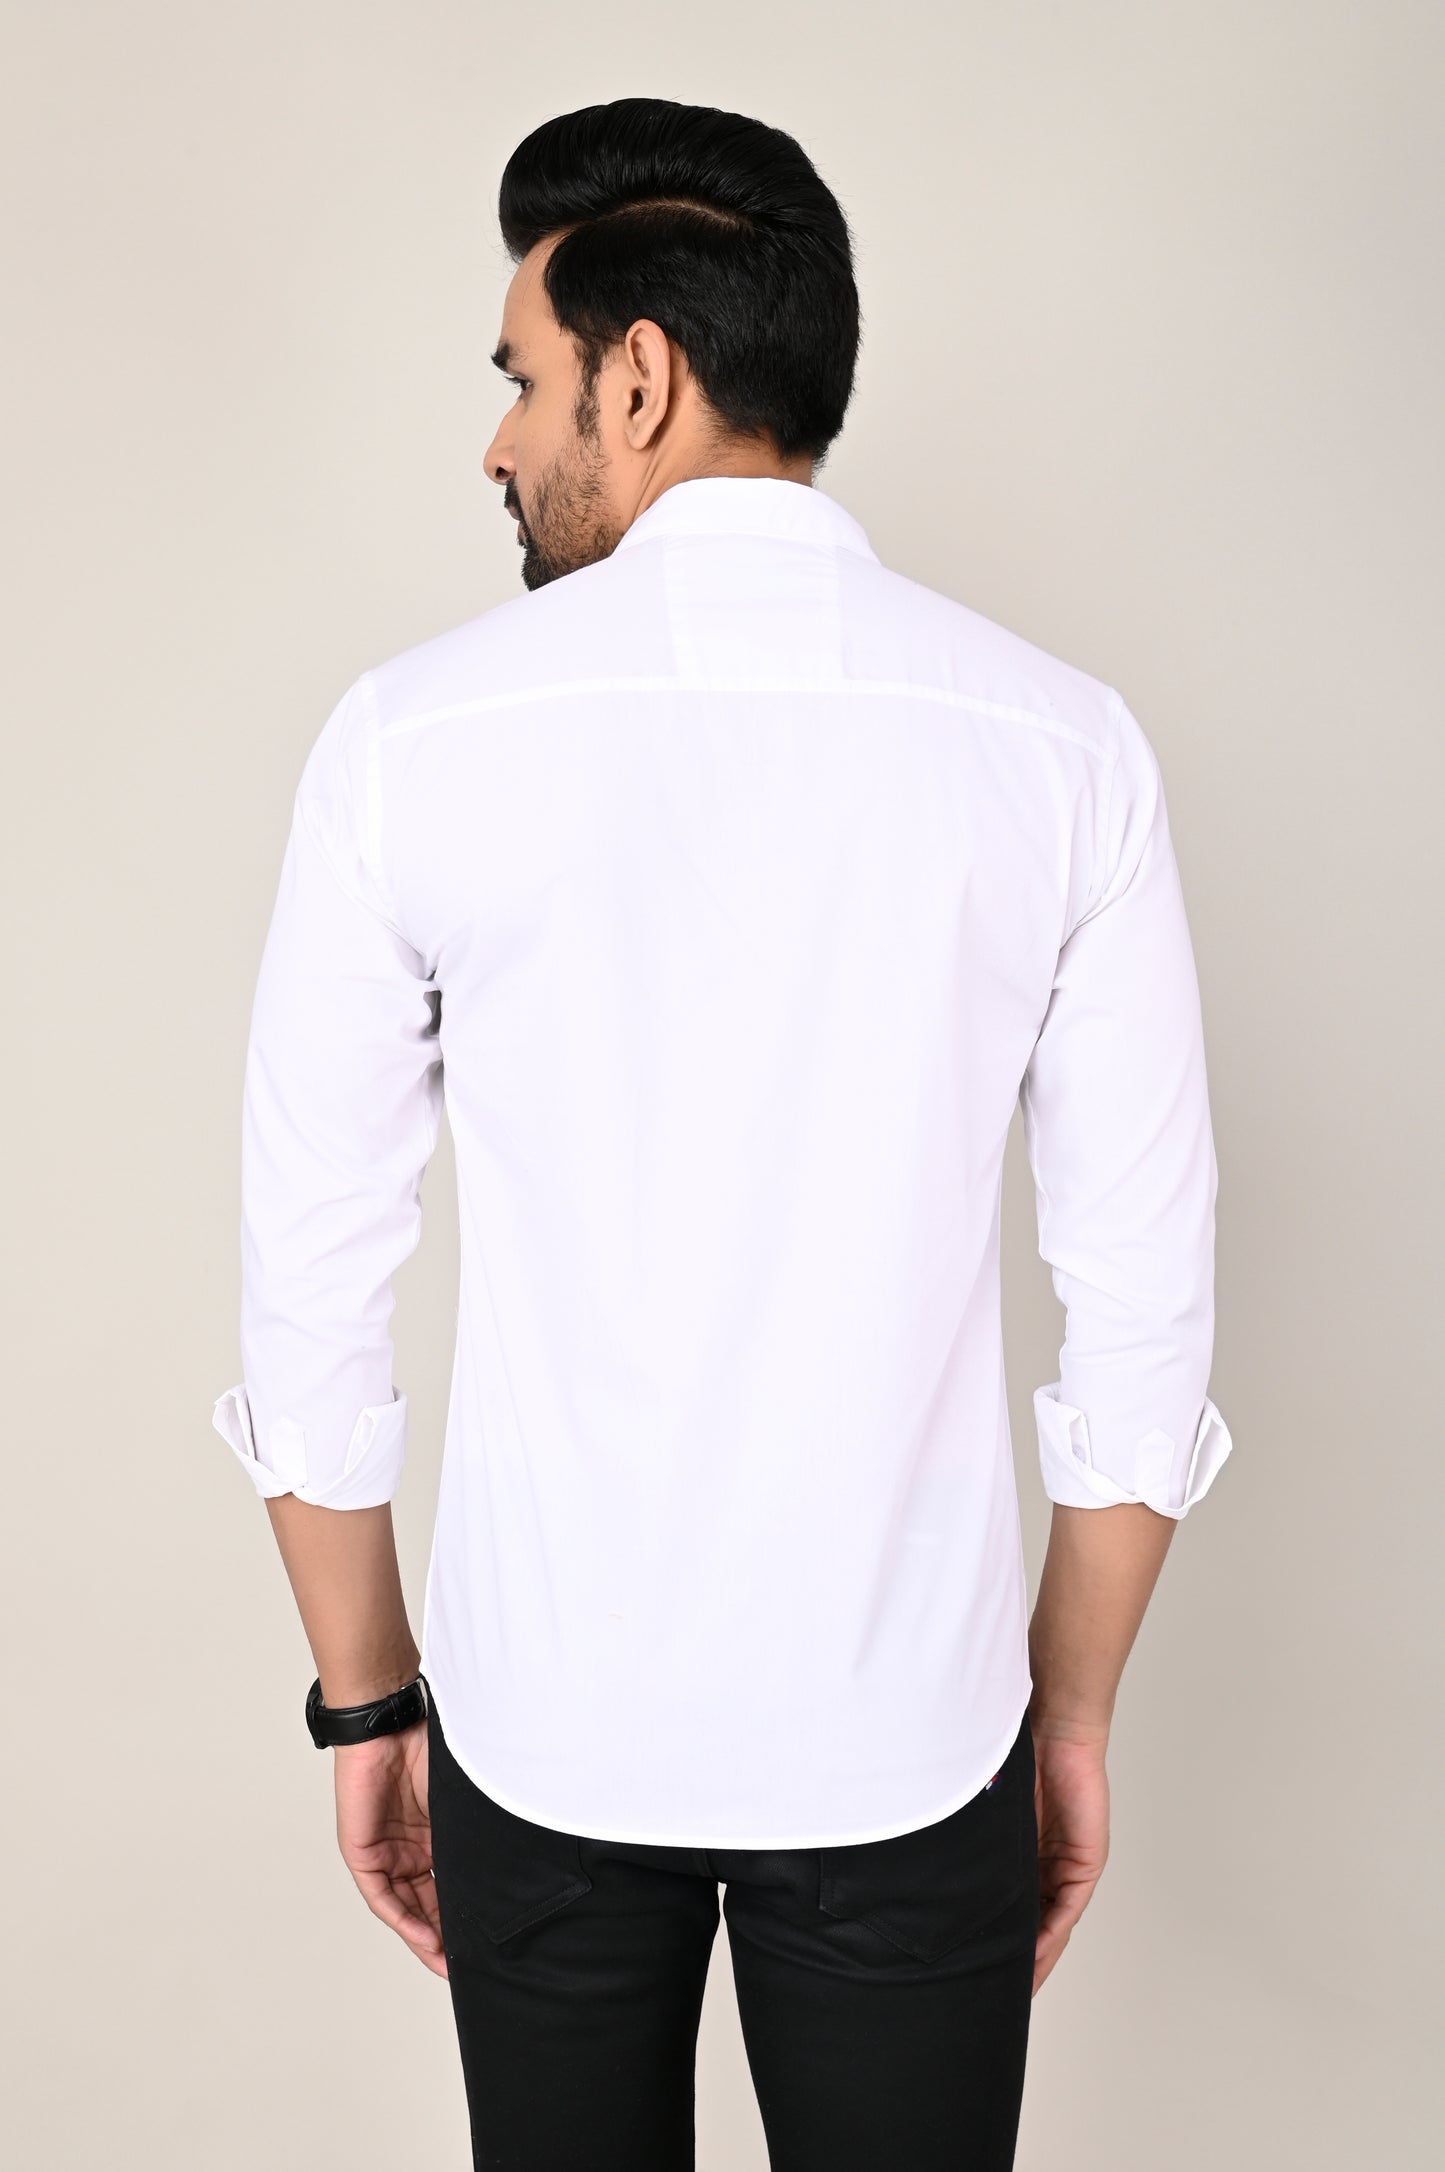 Men's White Full Sleeves shirts